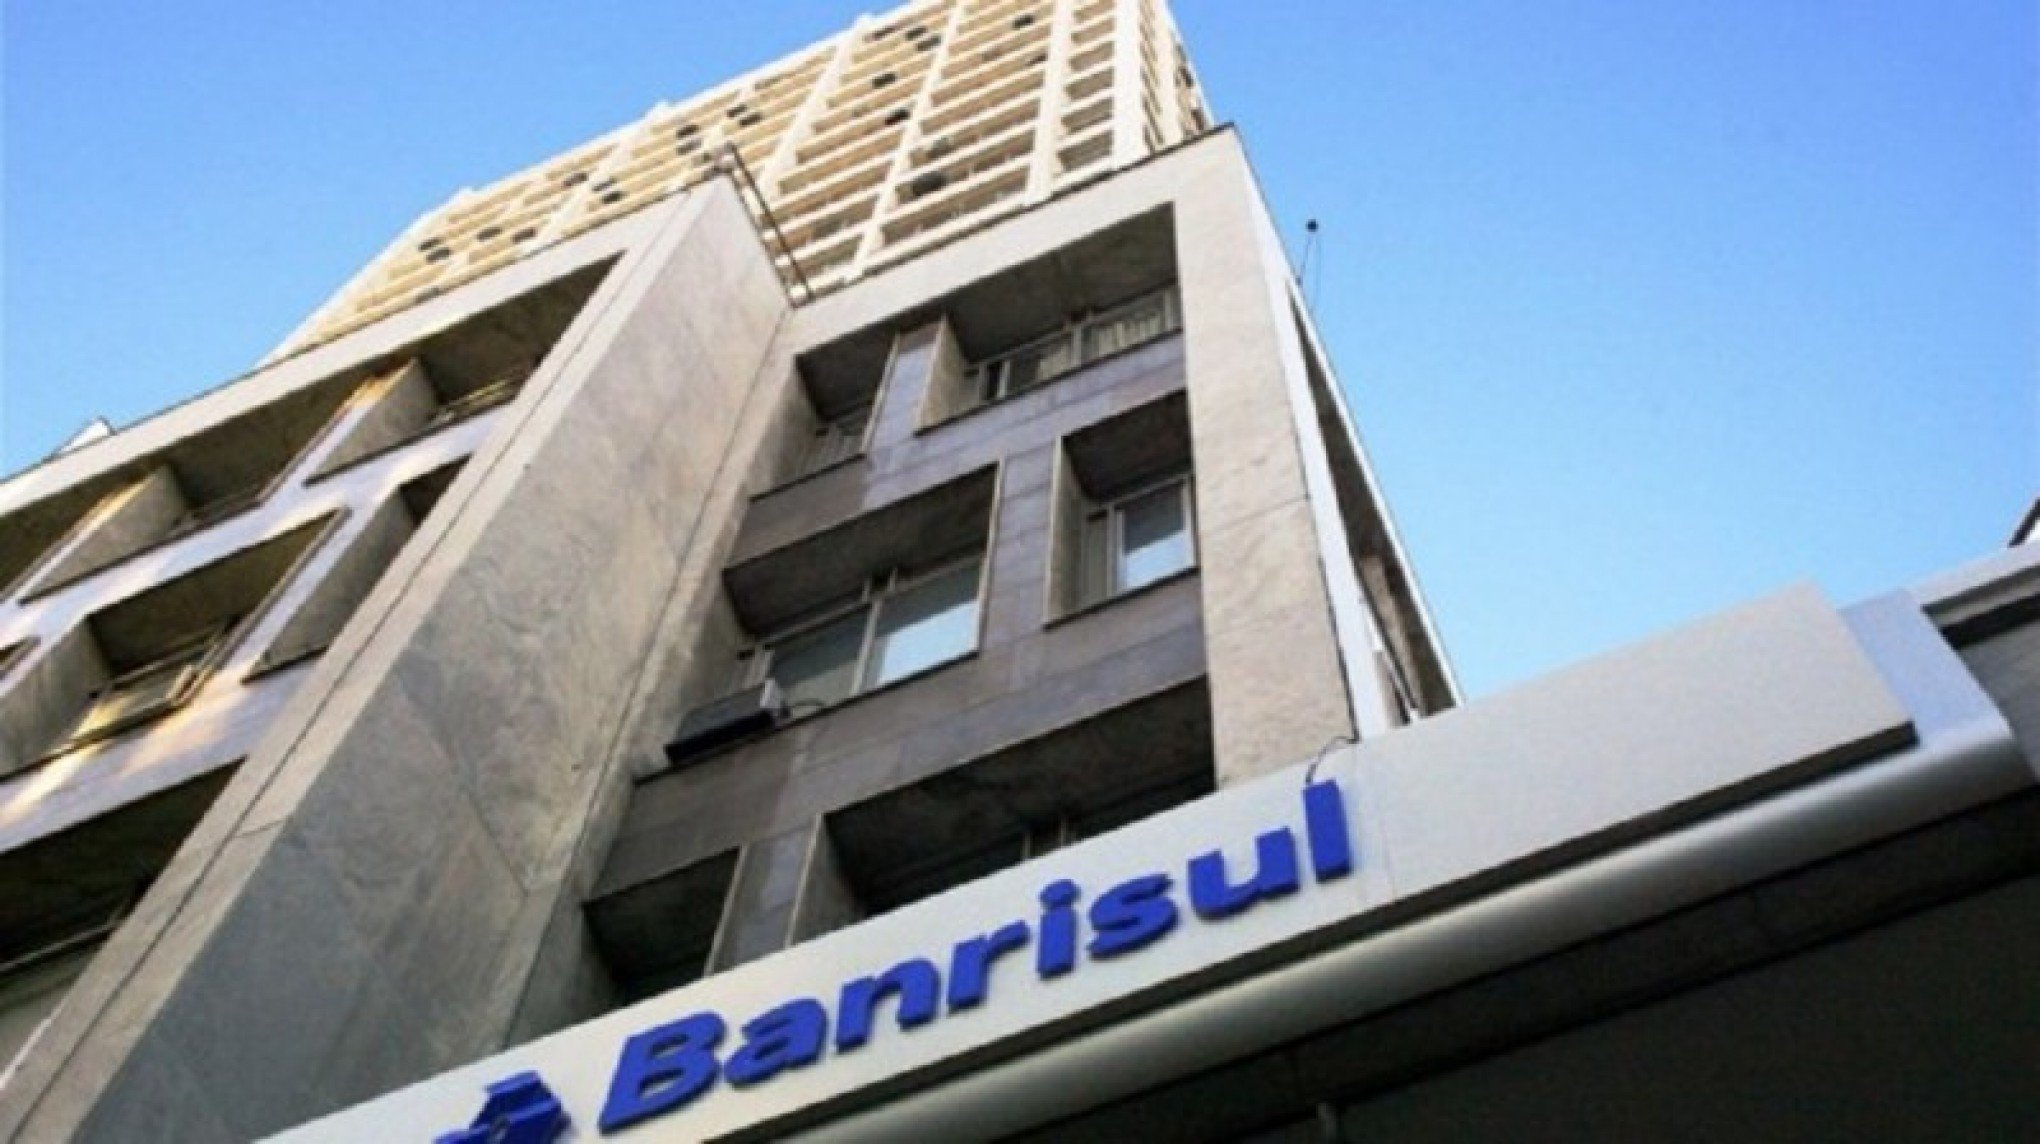 CATÁSTROFE NO RS: Banrisul anuncia prorrogação das operações de crédito consignado